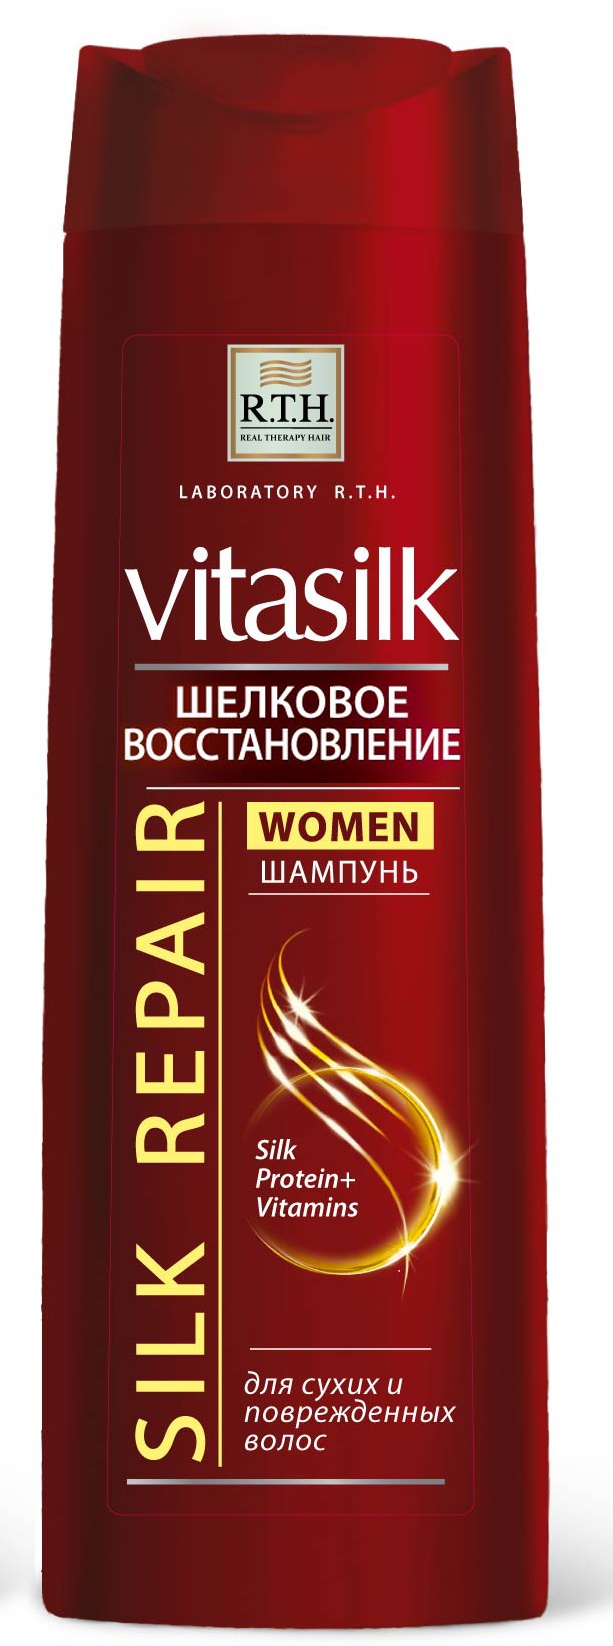 Шампунь для волос R.T.H. Vitasilk WOMEN Шелковое восстановление